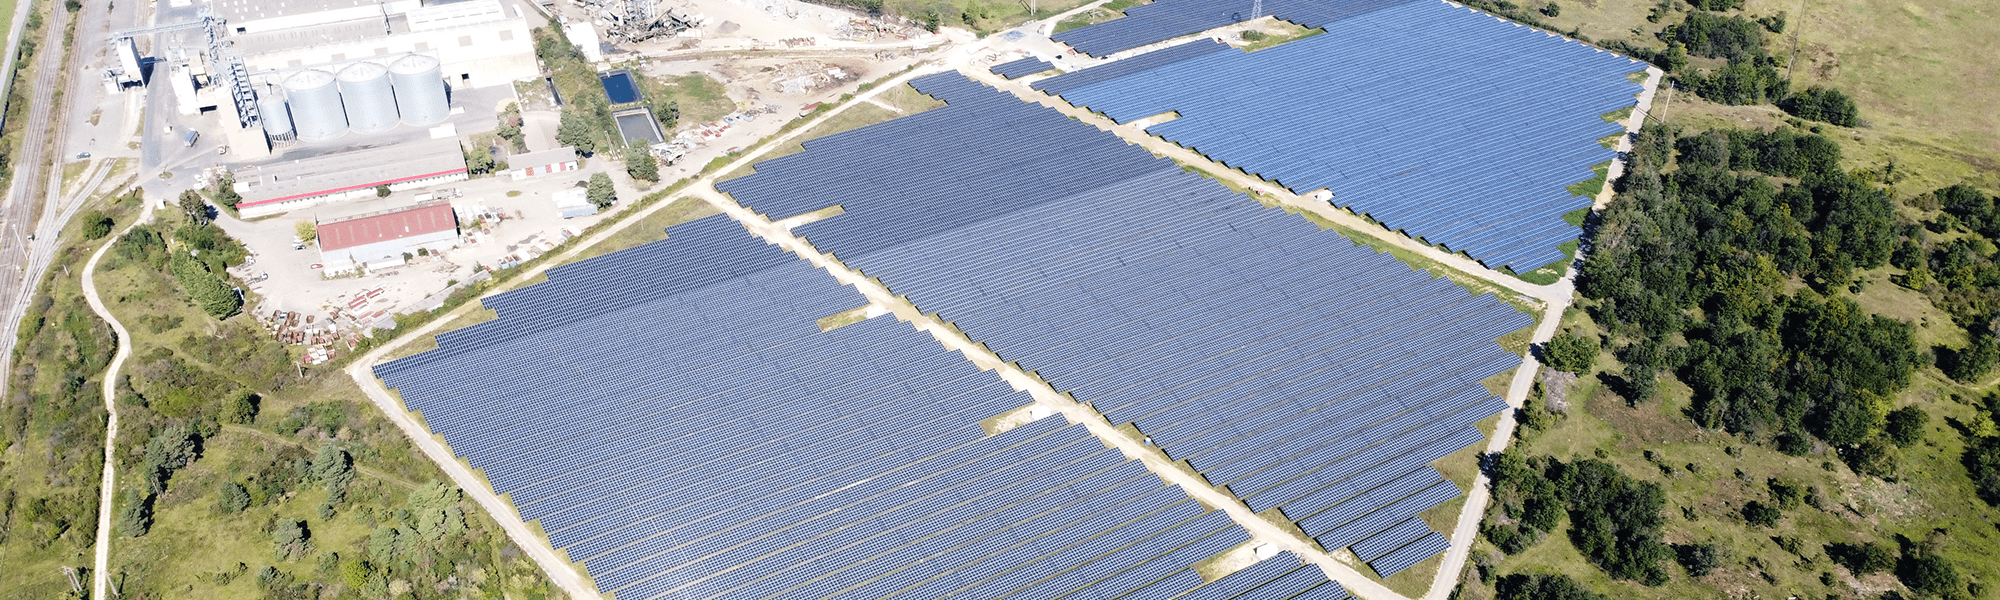 centrale photovoltaique au sol CSU - blog